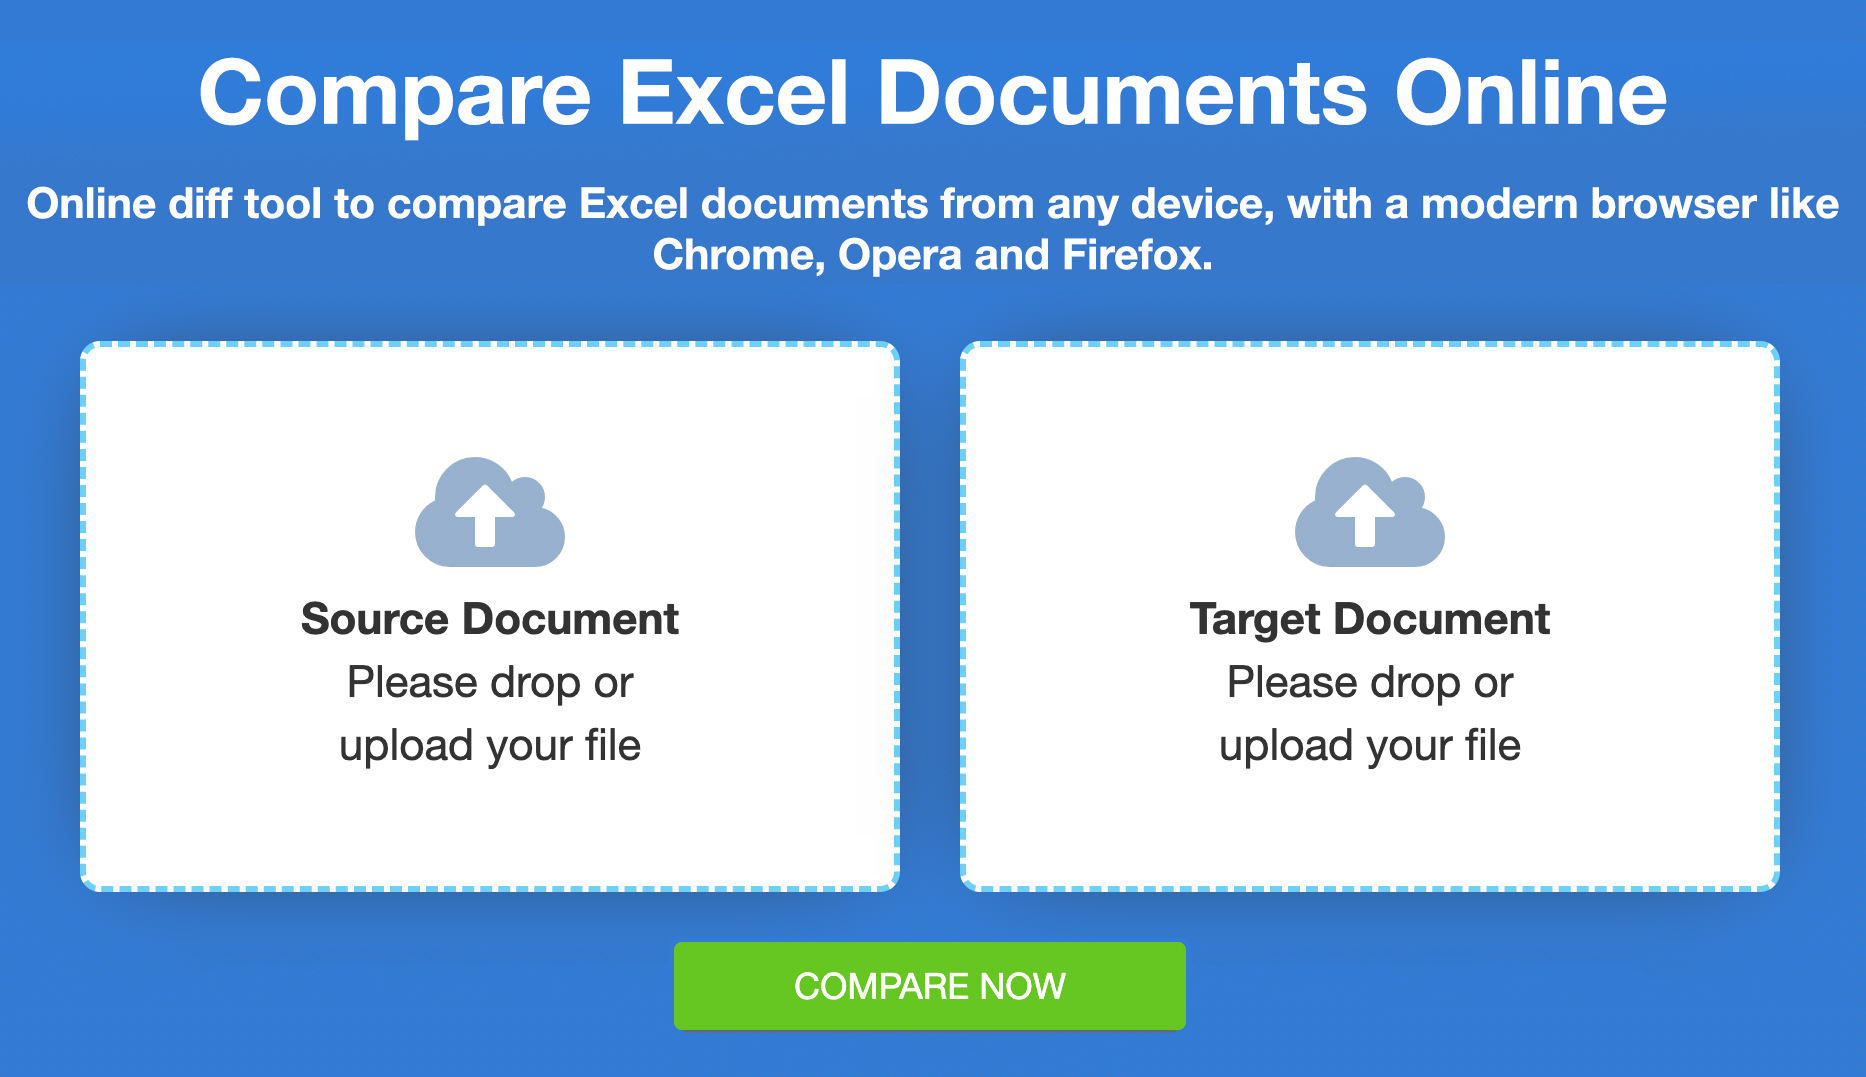 Porovnejte soubory Excelu – online srovnání zdarma